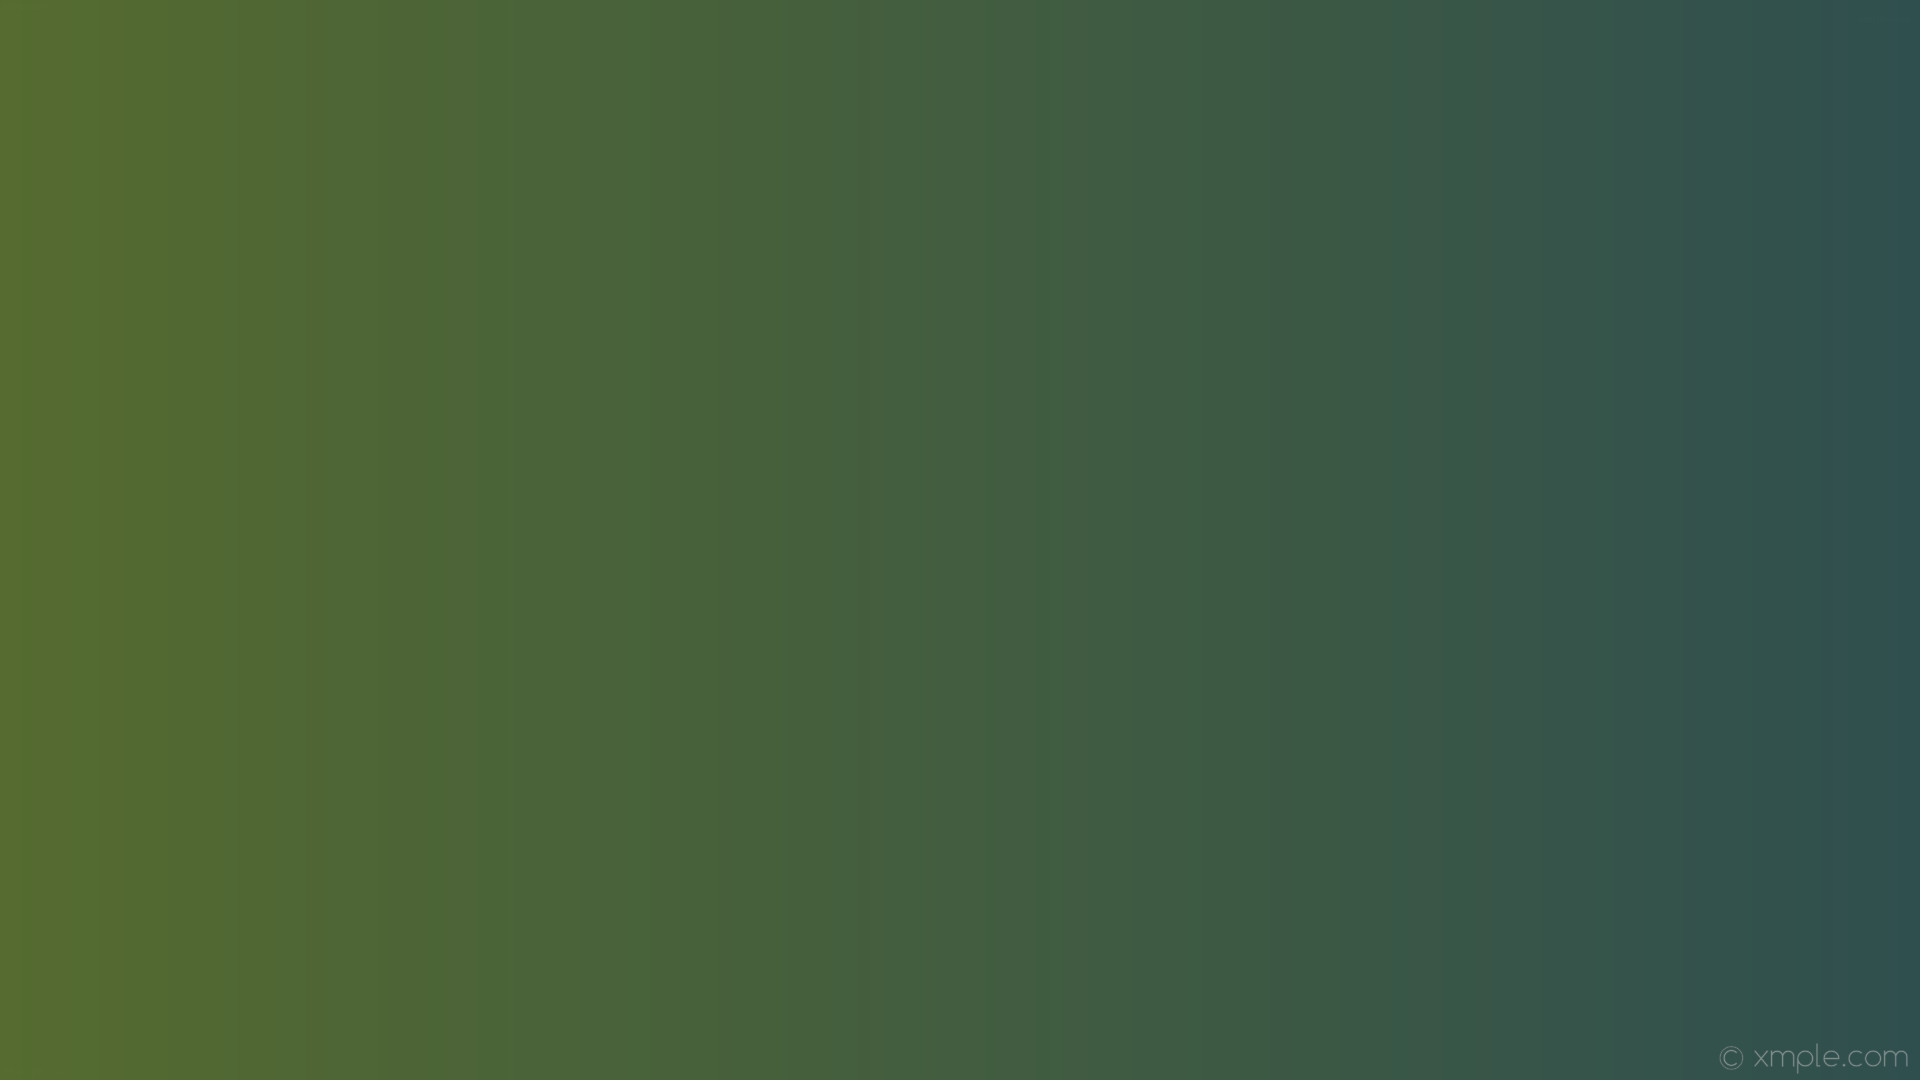 1920x1080 wallpaper grey linear gradient green dark slate gray dark olive green  #2f4f4f #556b2f 0